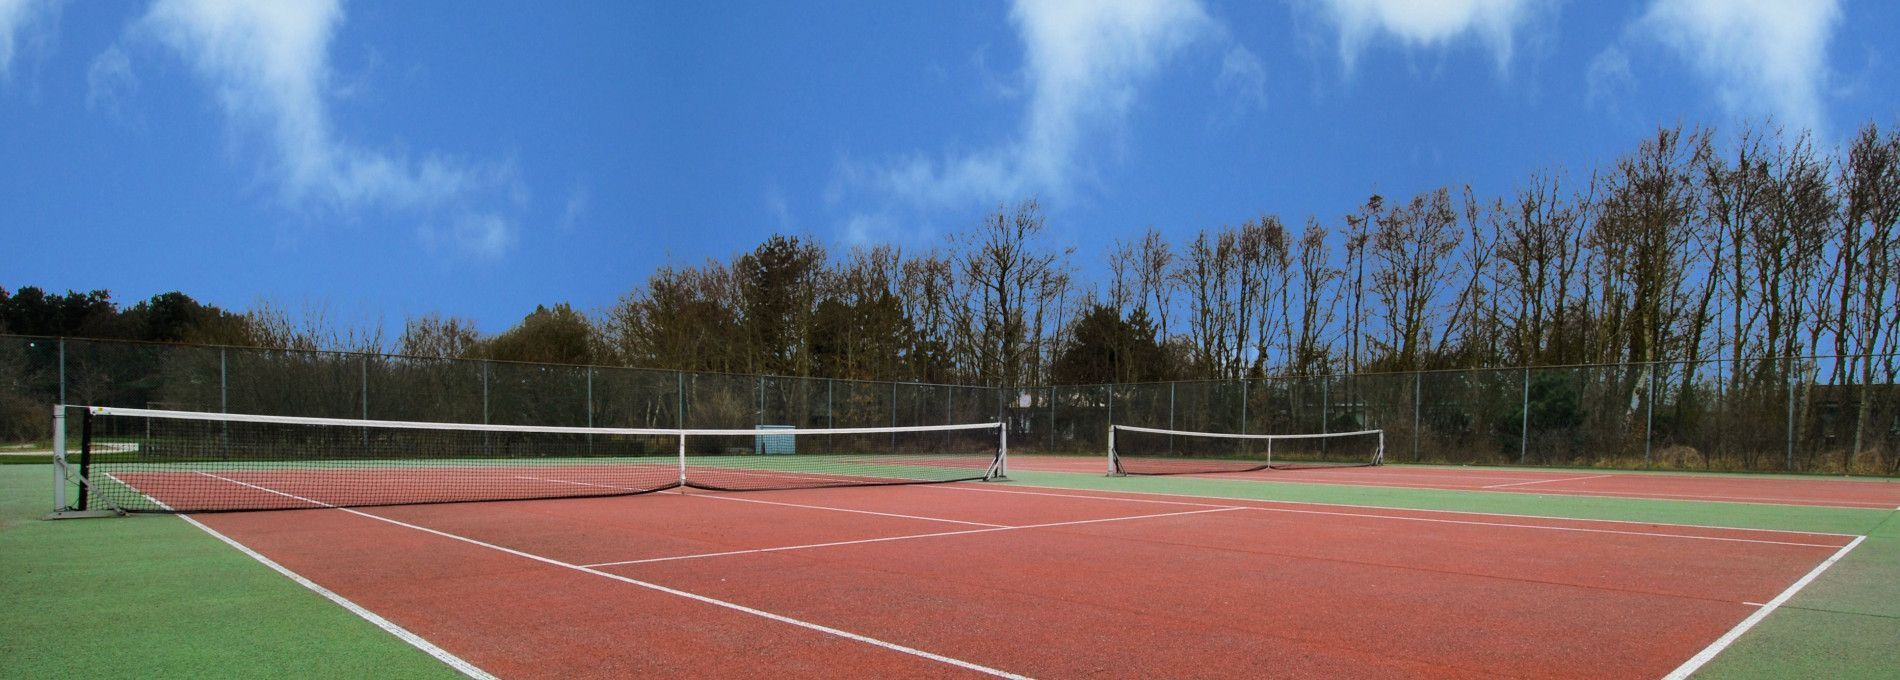 Tennis court Fletcher Resort-Hotel Amelander Kaap - Tourist Information 